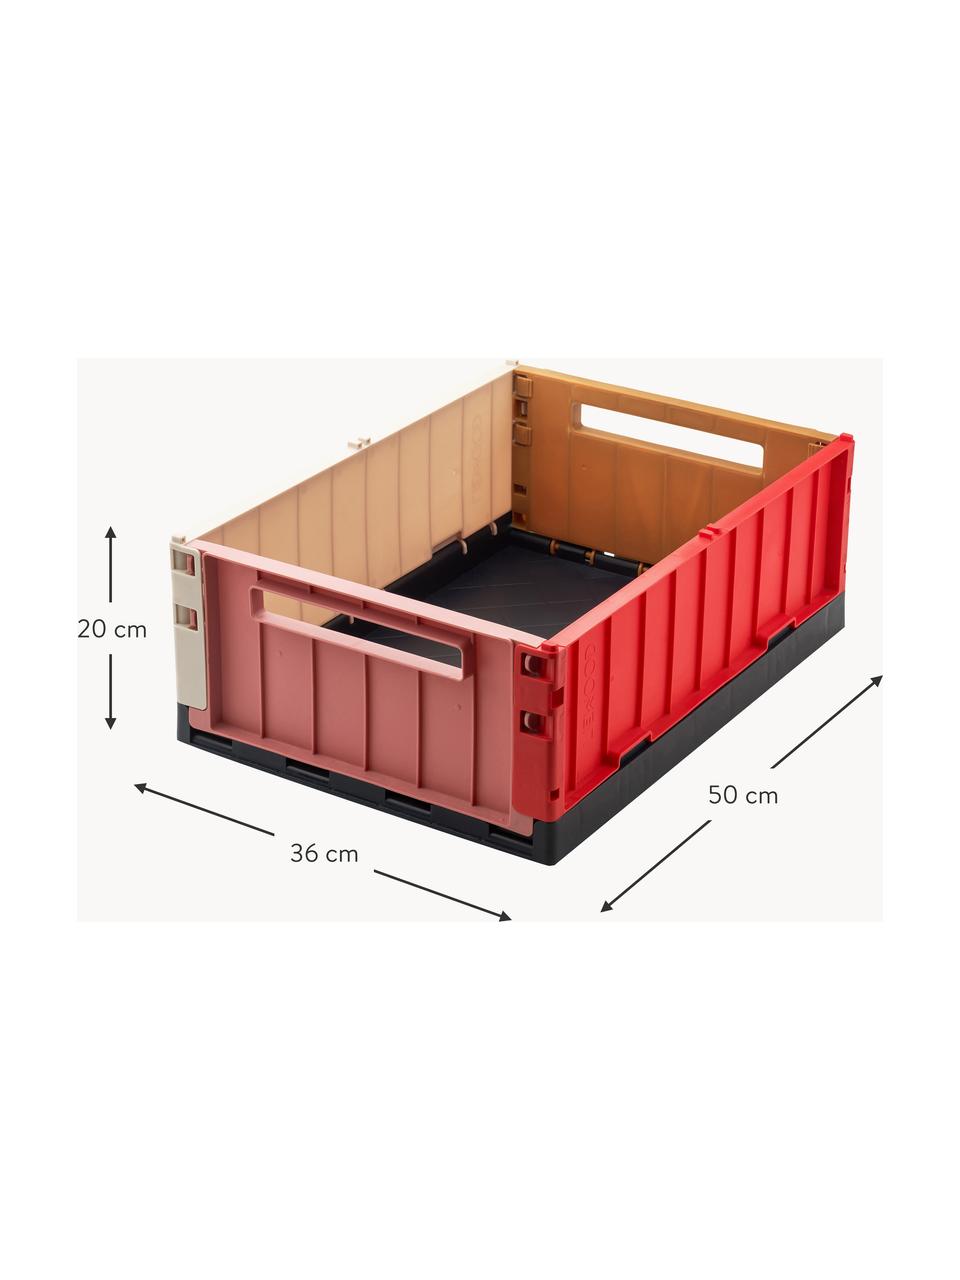 Skládací box Weston, 60 % recyklovaný polypropylen, 40 % polypropylen, Hnědá, odstíny růžové, korálově červená, Š 50 cm, V 20 cm